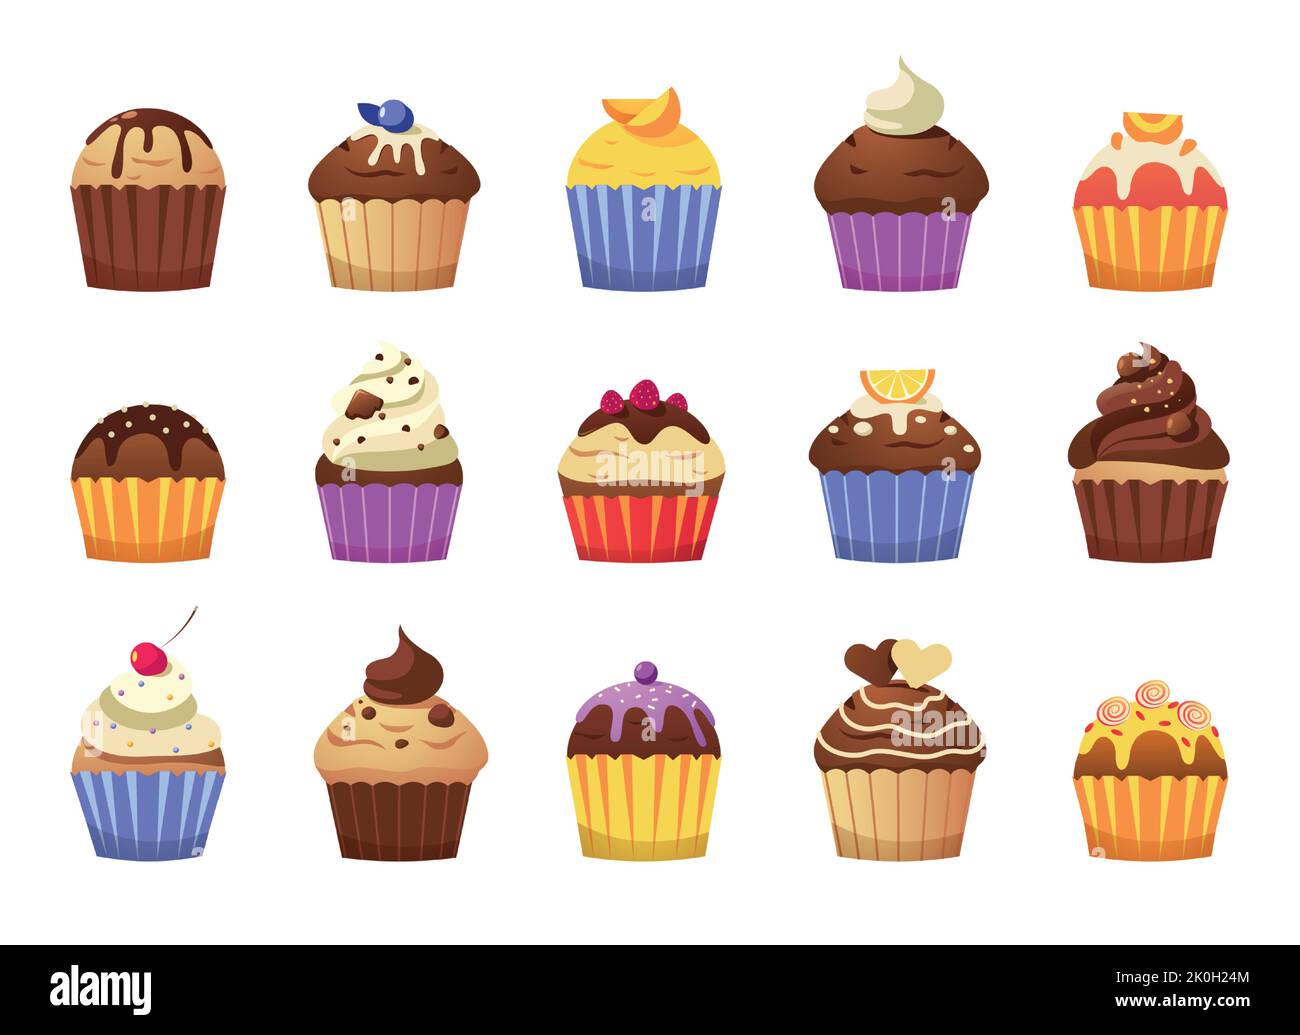 Cupcake cartone animato. Deliziosi muffin con panna e spolverini, dolci colorati per festeggiare o fare colazione, prodotti da forno con guarnizioni a glassa Illustrazione Vettoriale